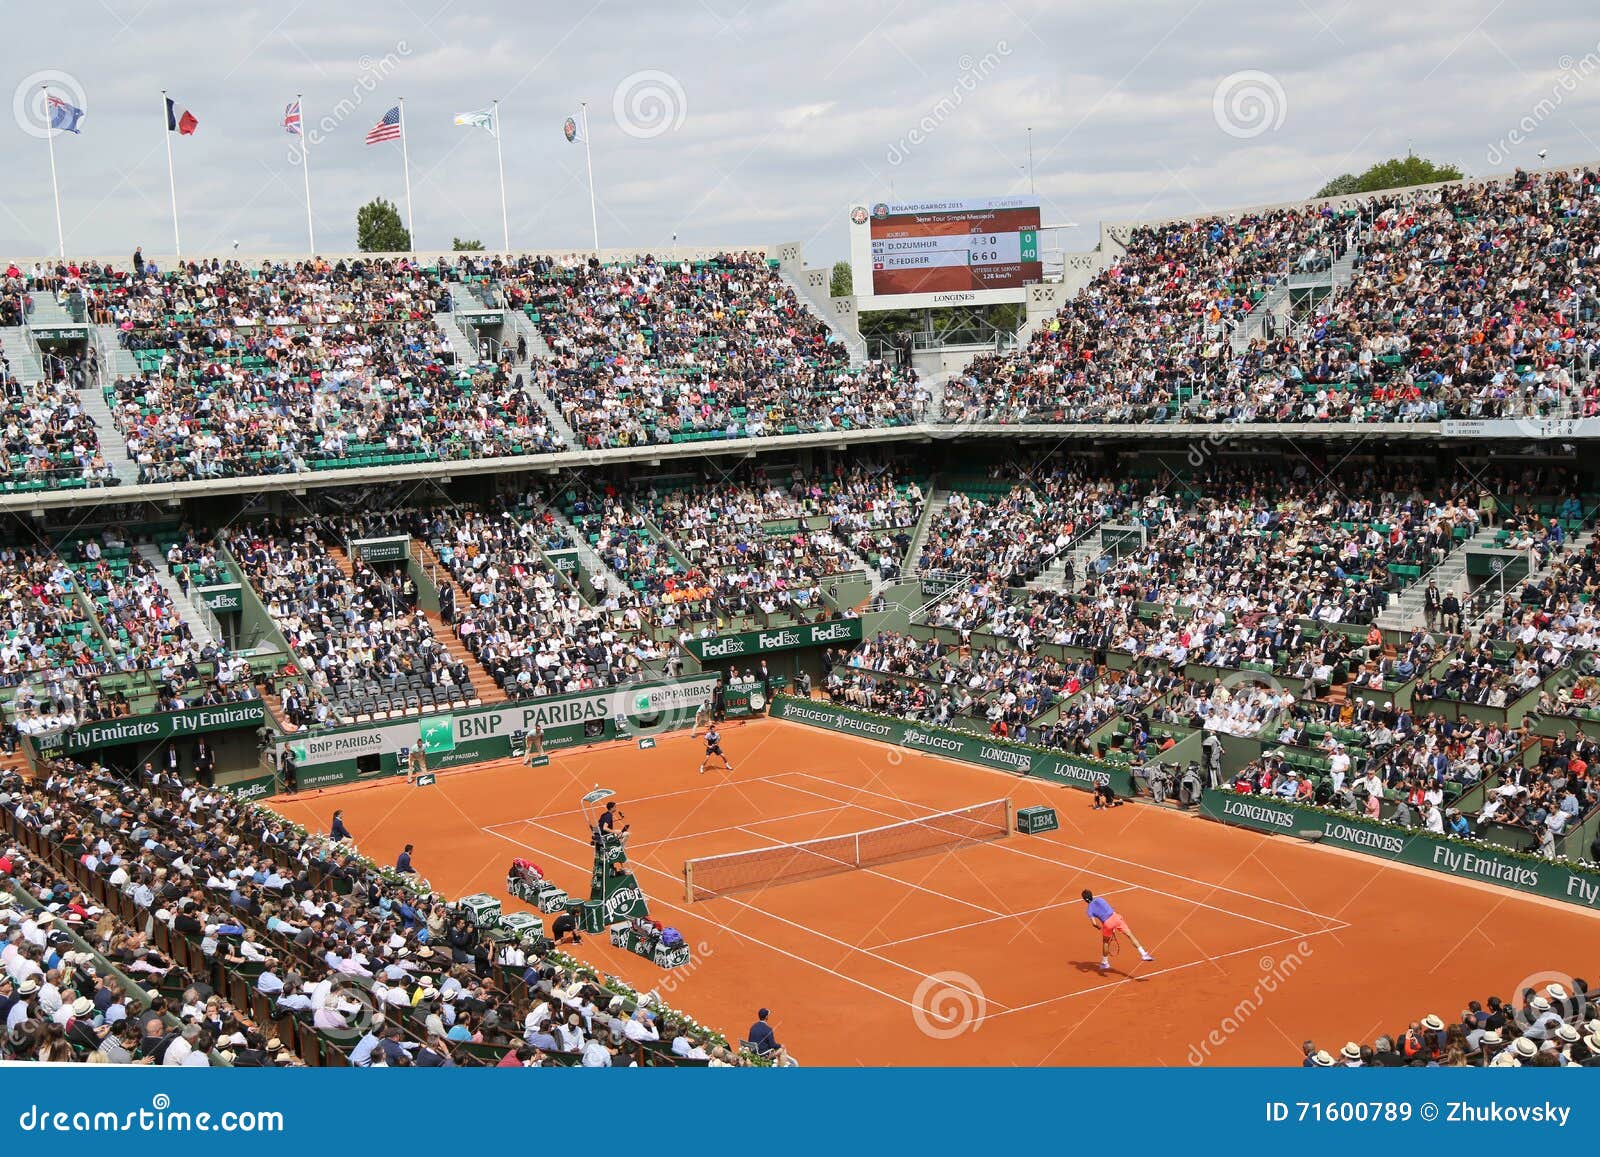 39 Roland Garros In The City Reception Stock Photos, High-Res